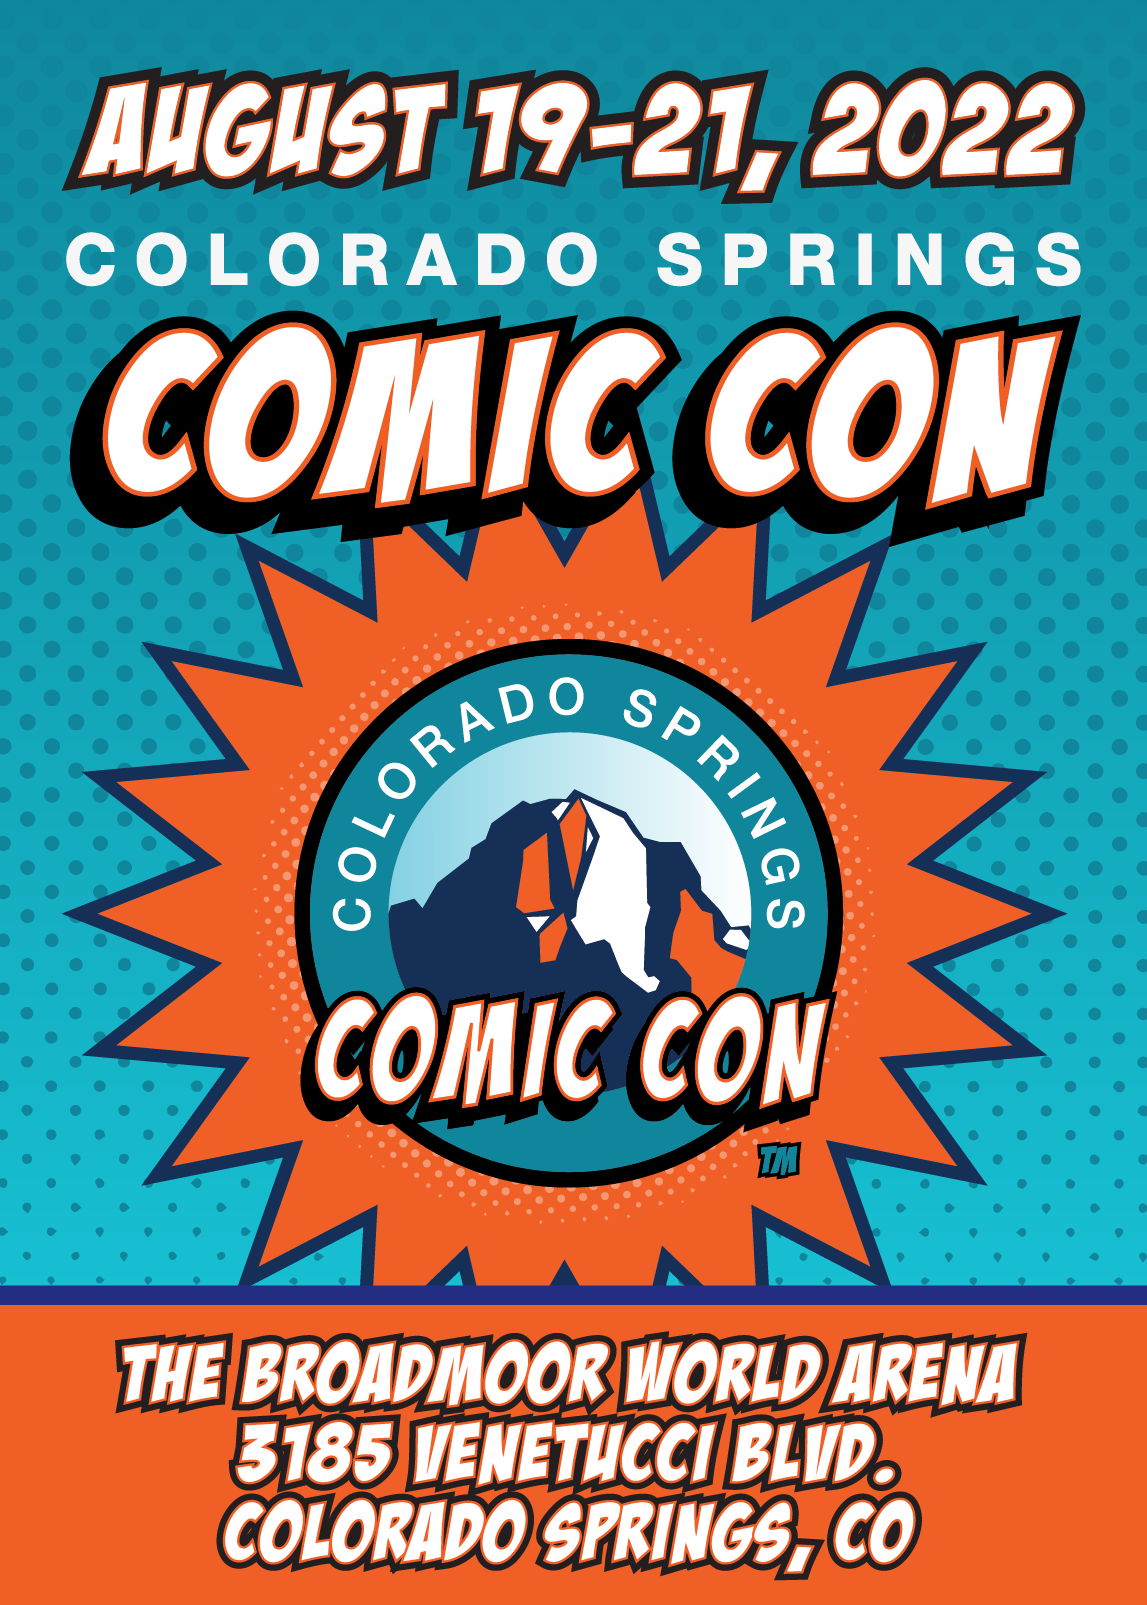 Colorado Springs Comic Con After Party Tickets at Colorado Springs